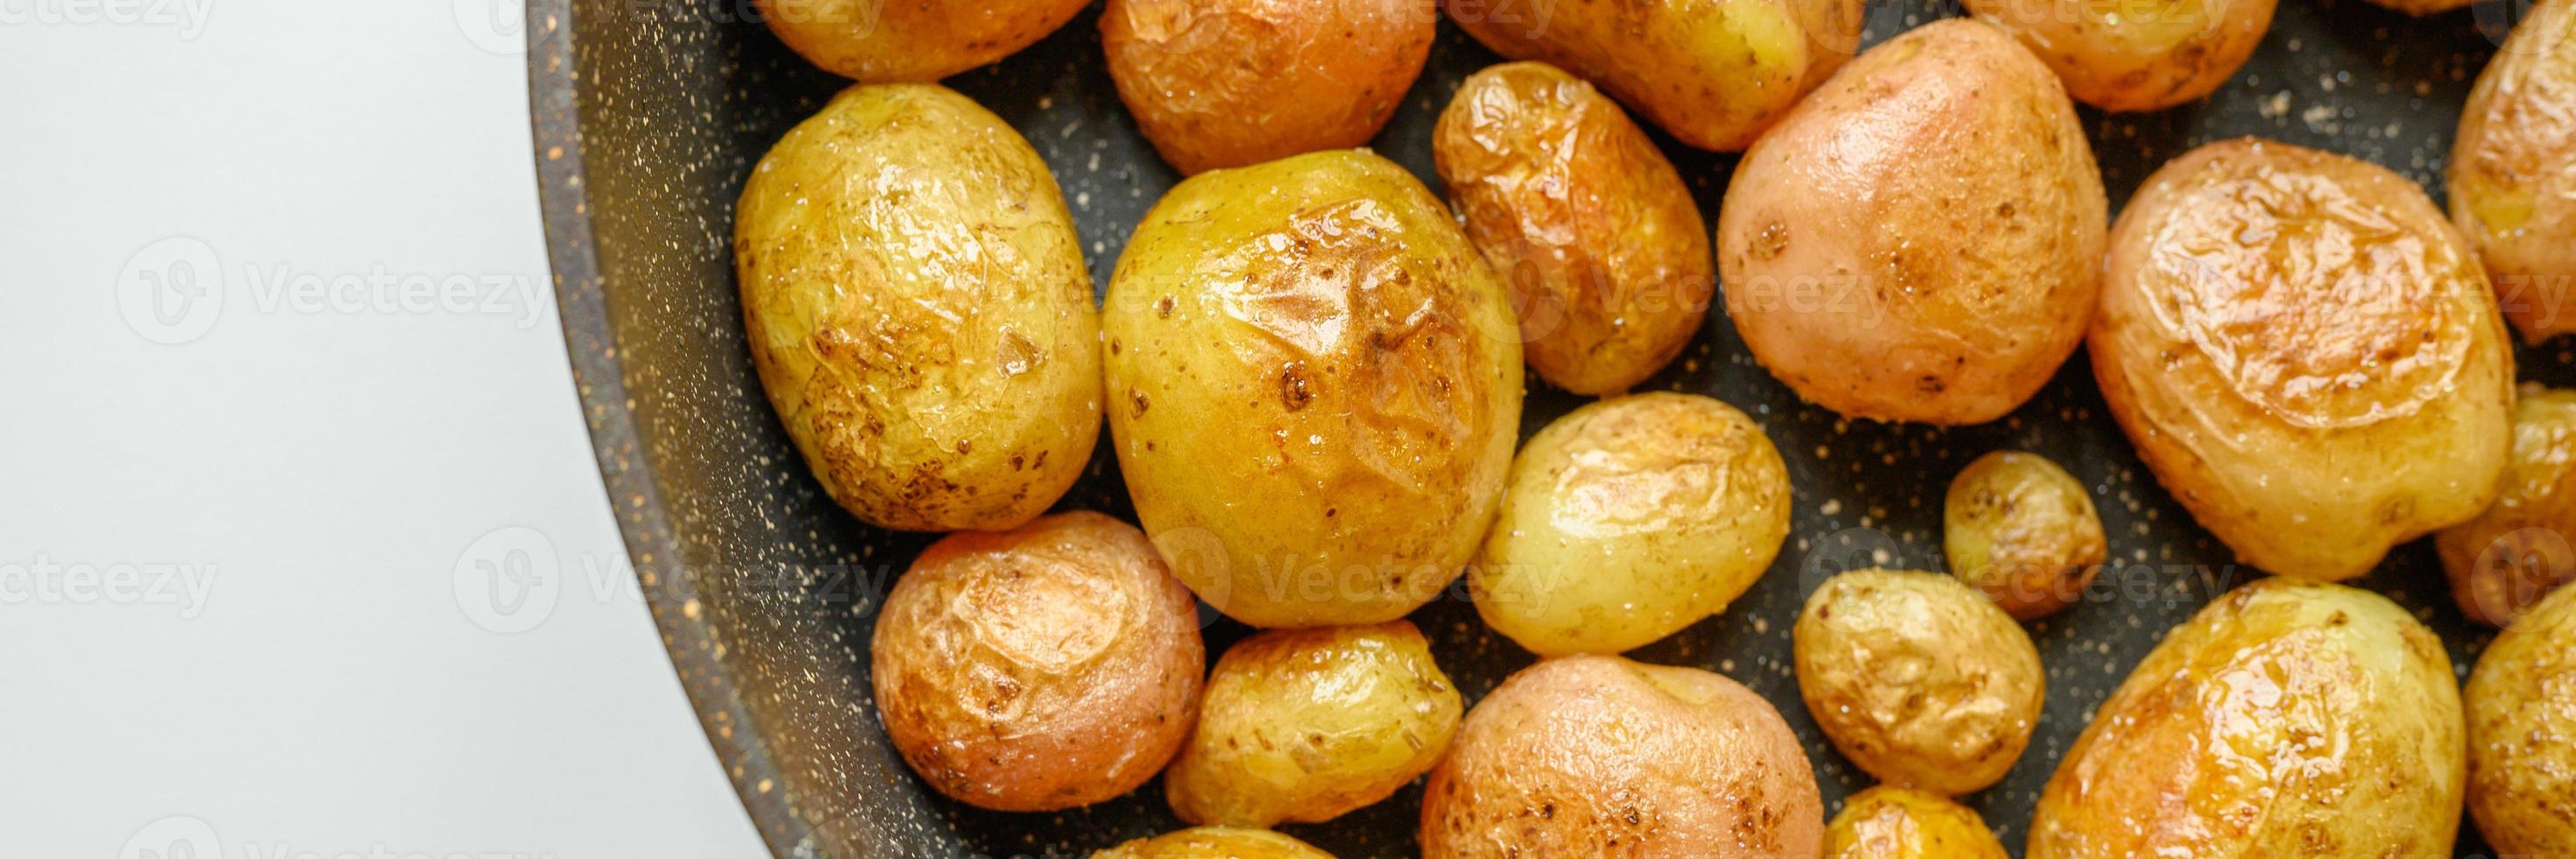 goldene Bratkartoffeln in der Haut. Banner foto